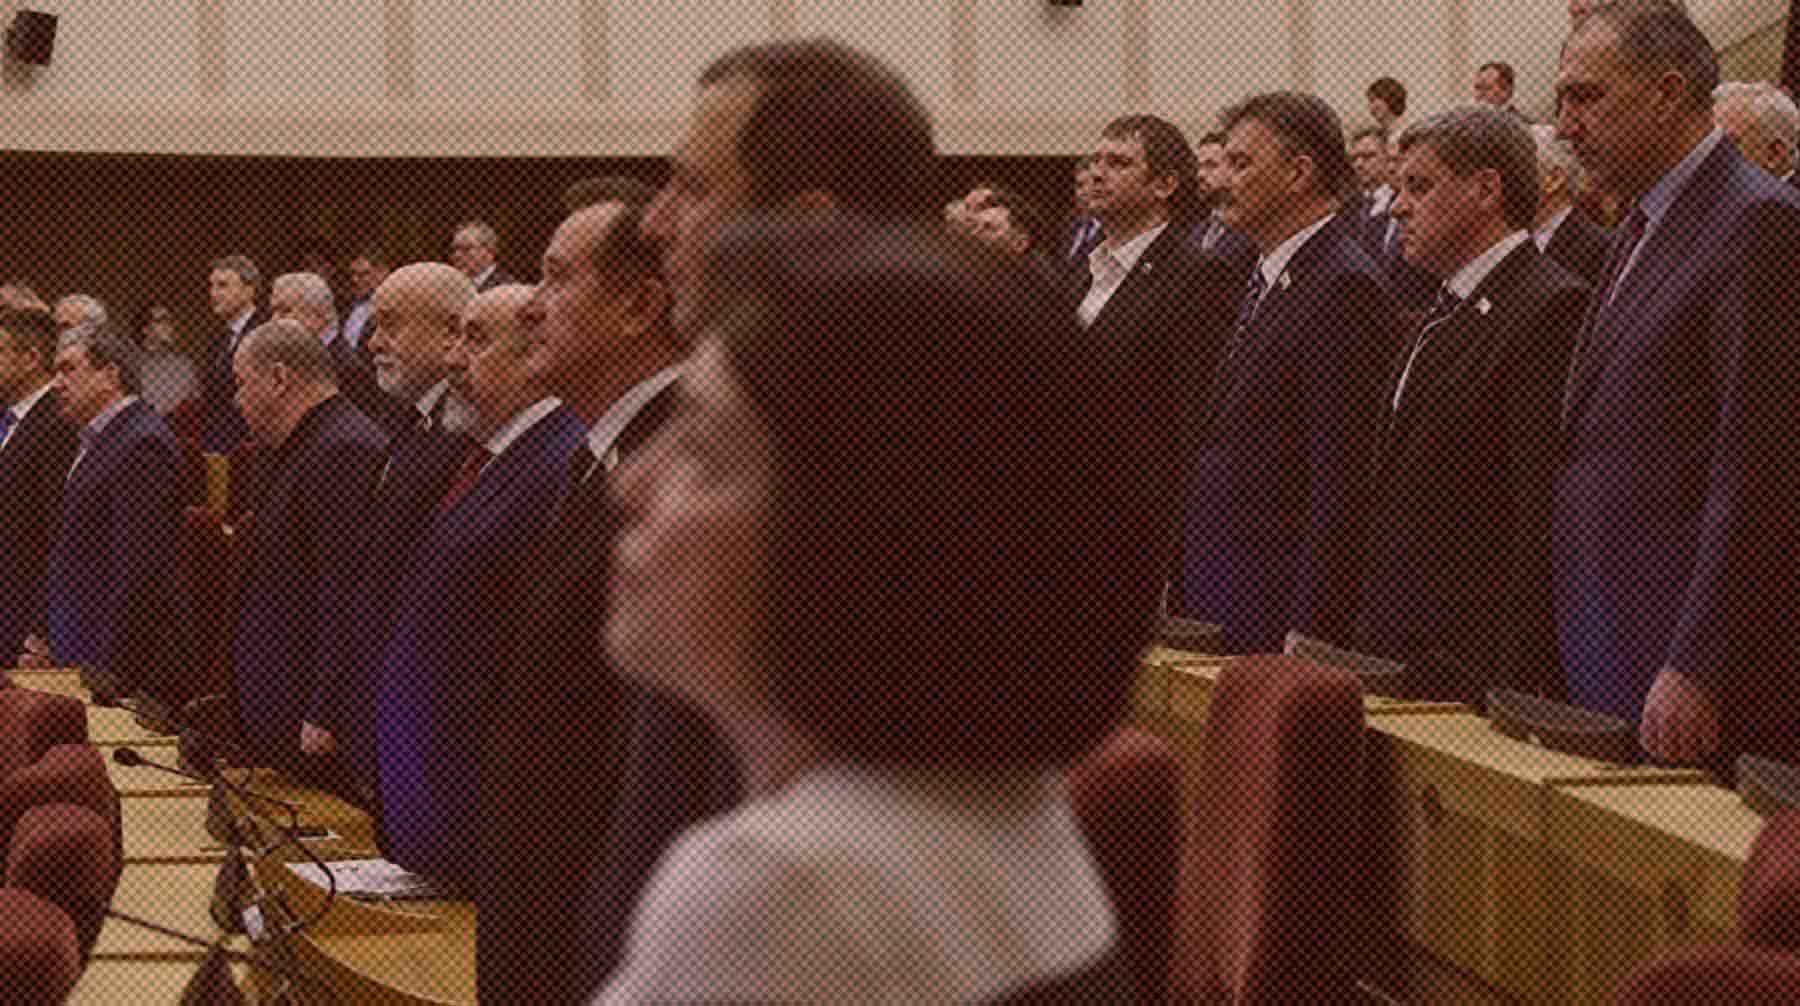 49 депутатов закса поддержали инициативу, против выступили 12 человек, один парламентарий воздержался Депутаты на внеочередной сессии Законодательного собрания Новосибирской области